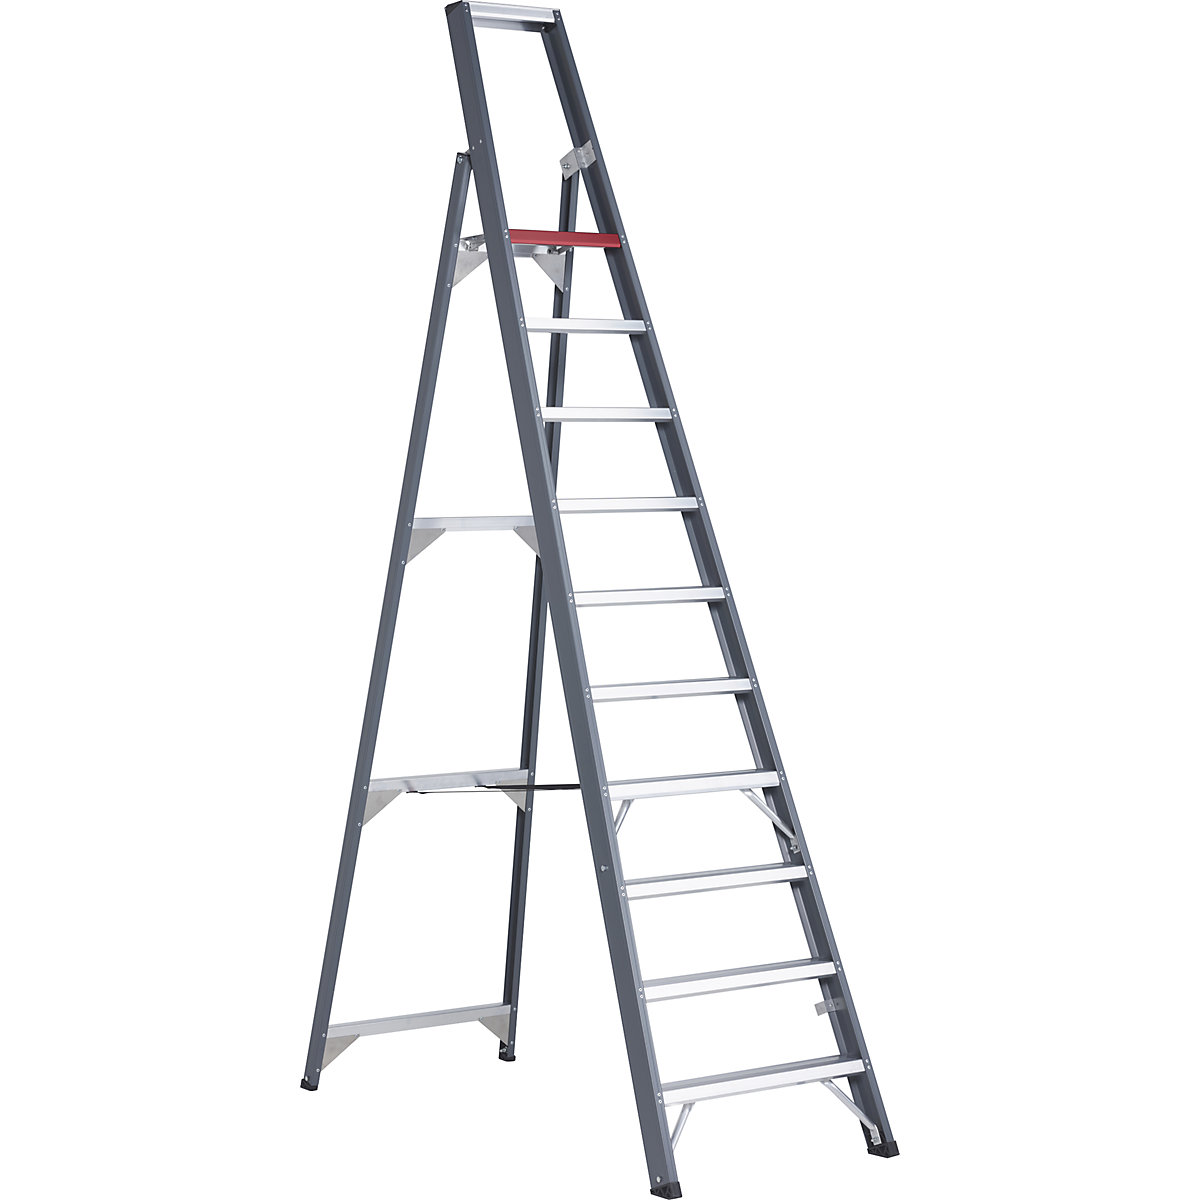 Aluminijasta dvokraka lestev s stopnicami, vzpenjanje z ene strani – Altrex, z odlagalno posodo, 10 stopnic, delovna višina 4350 mm-11